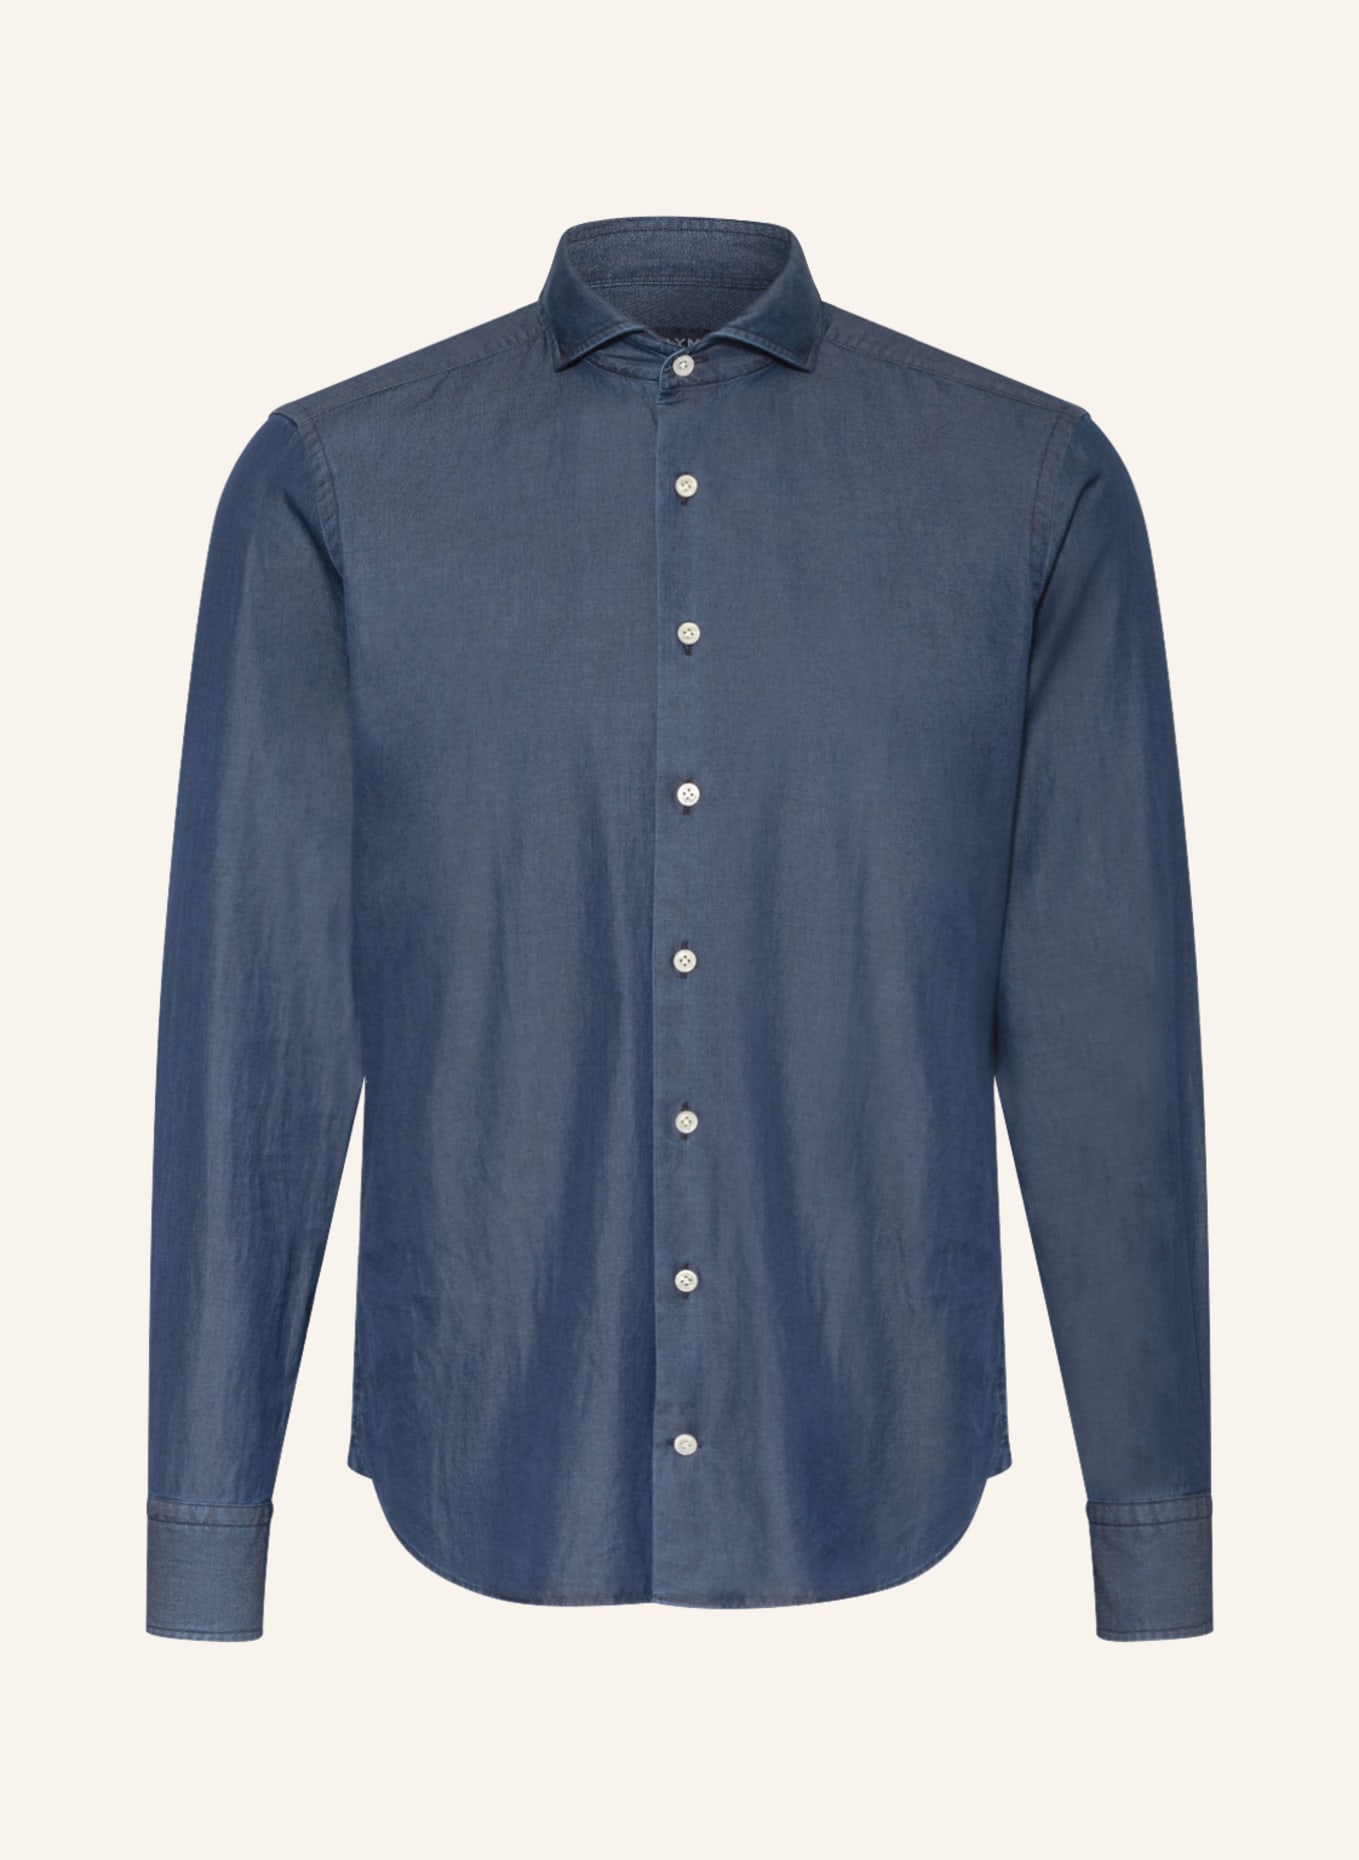 Рубашка OLYMP SIGNATURE tailored fit, темно-синий рубашка olymp regular fit темно синий